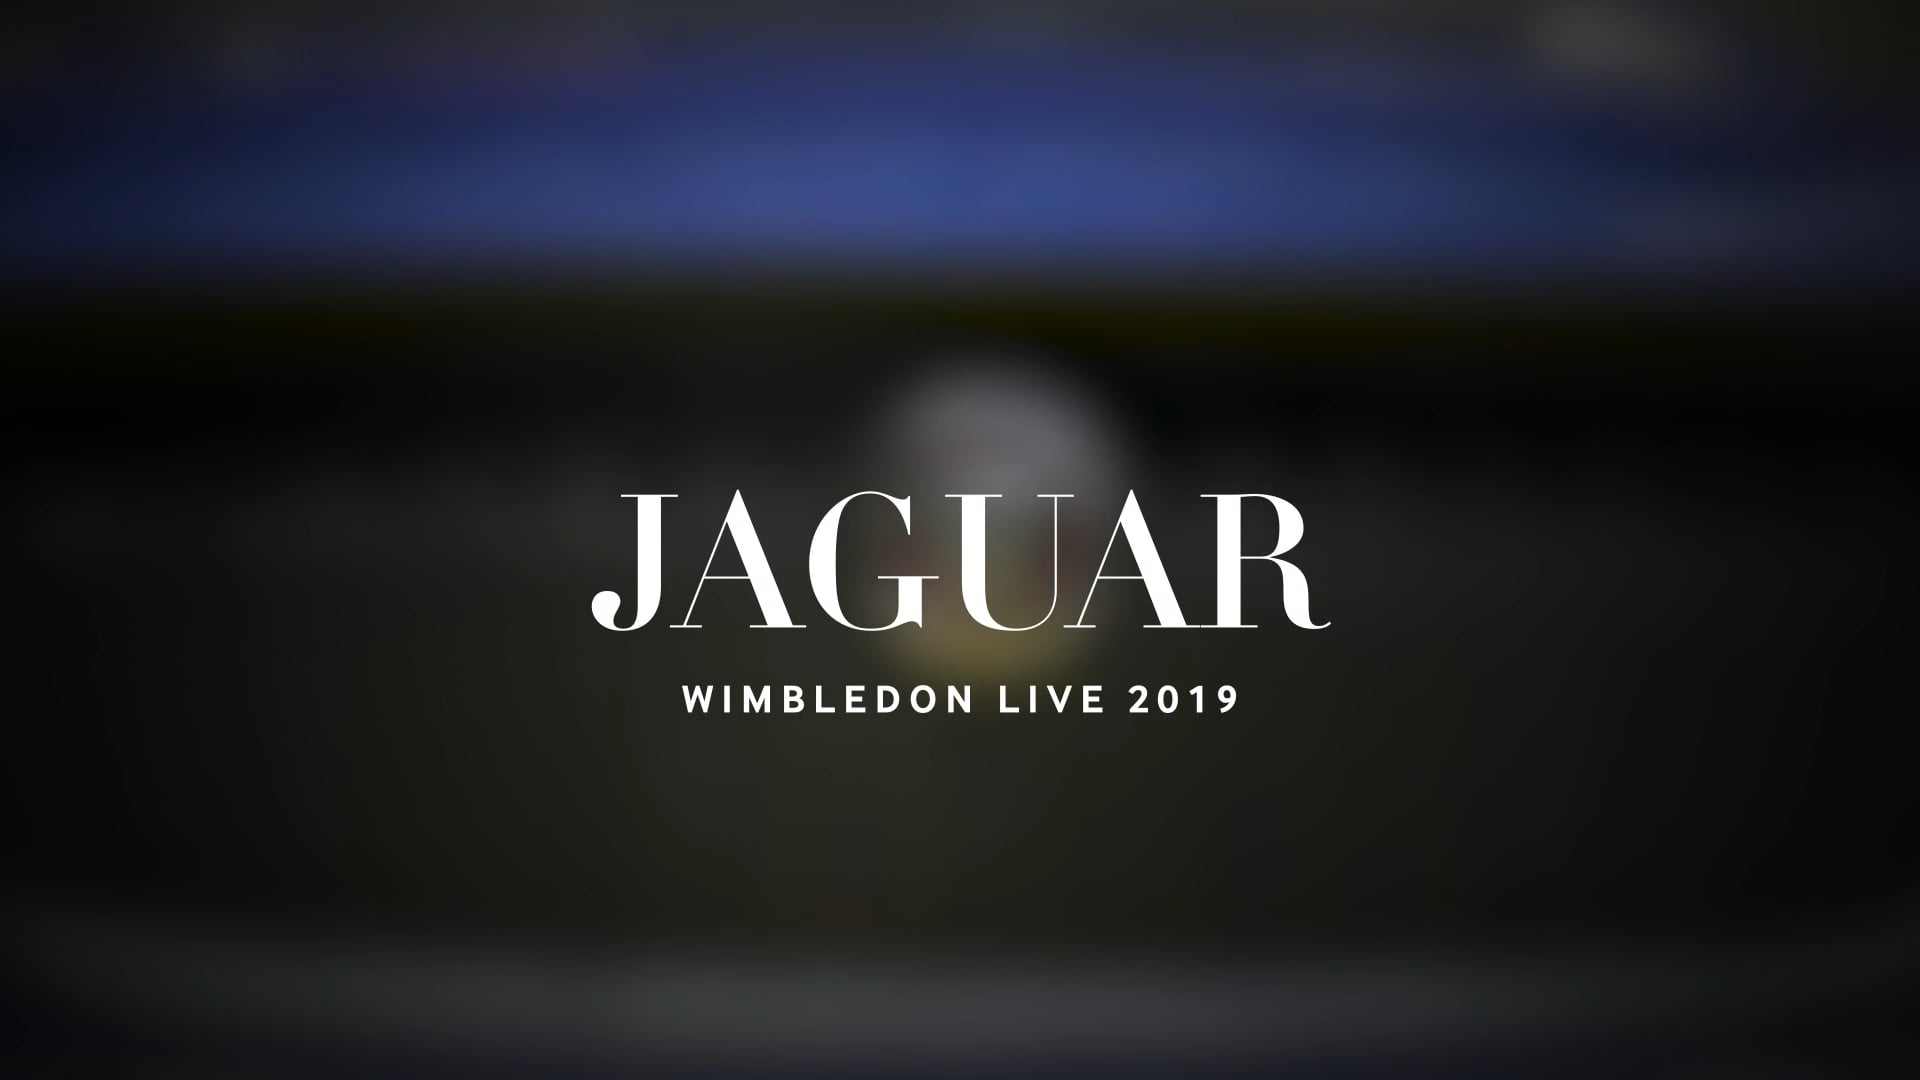 Jaguar Wimbledon Live 2019 on Vimeo